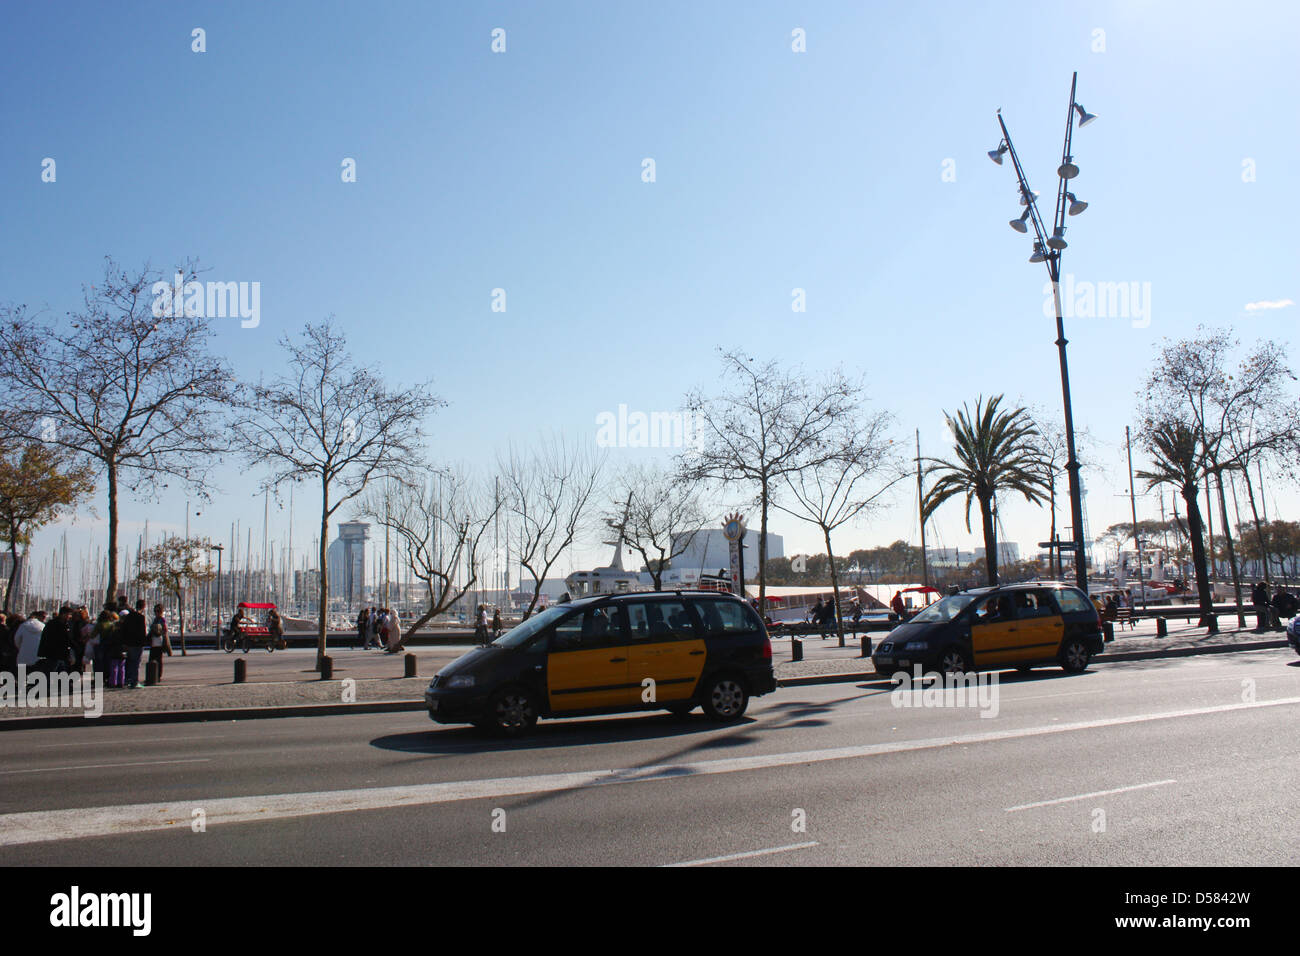 Barcelona city in Spain Stock Photo